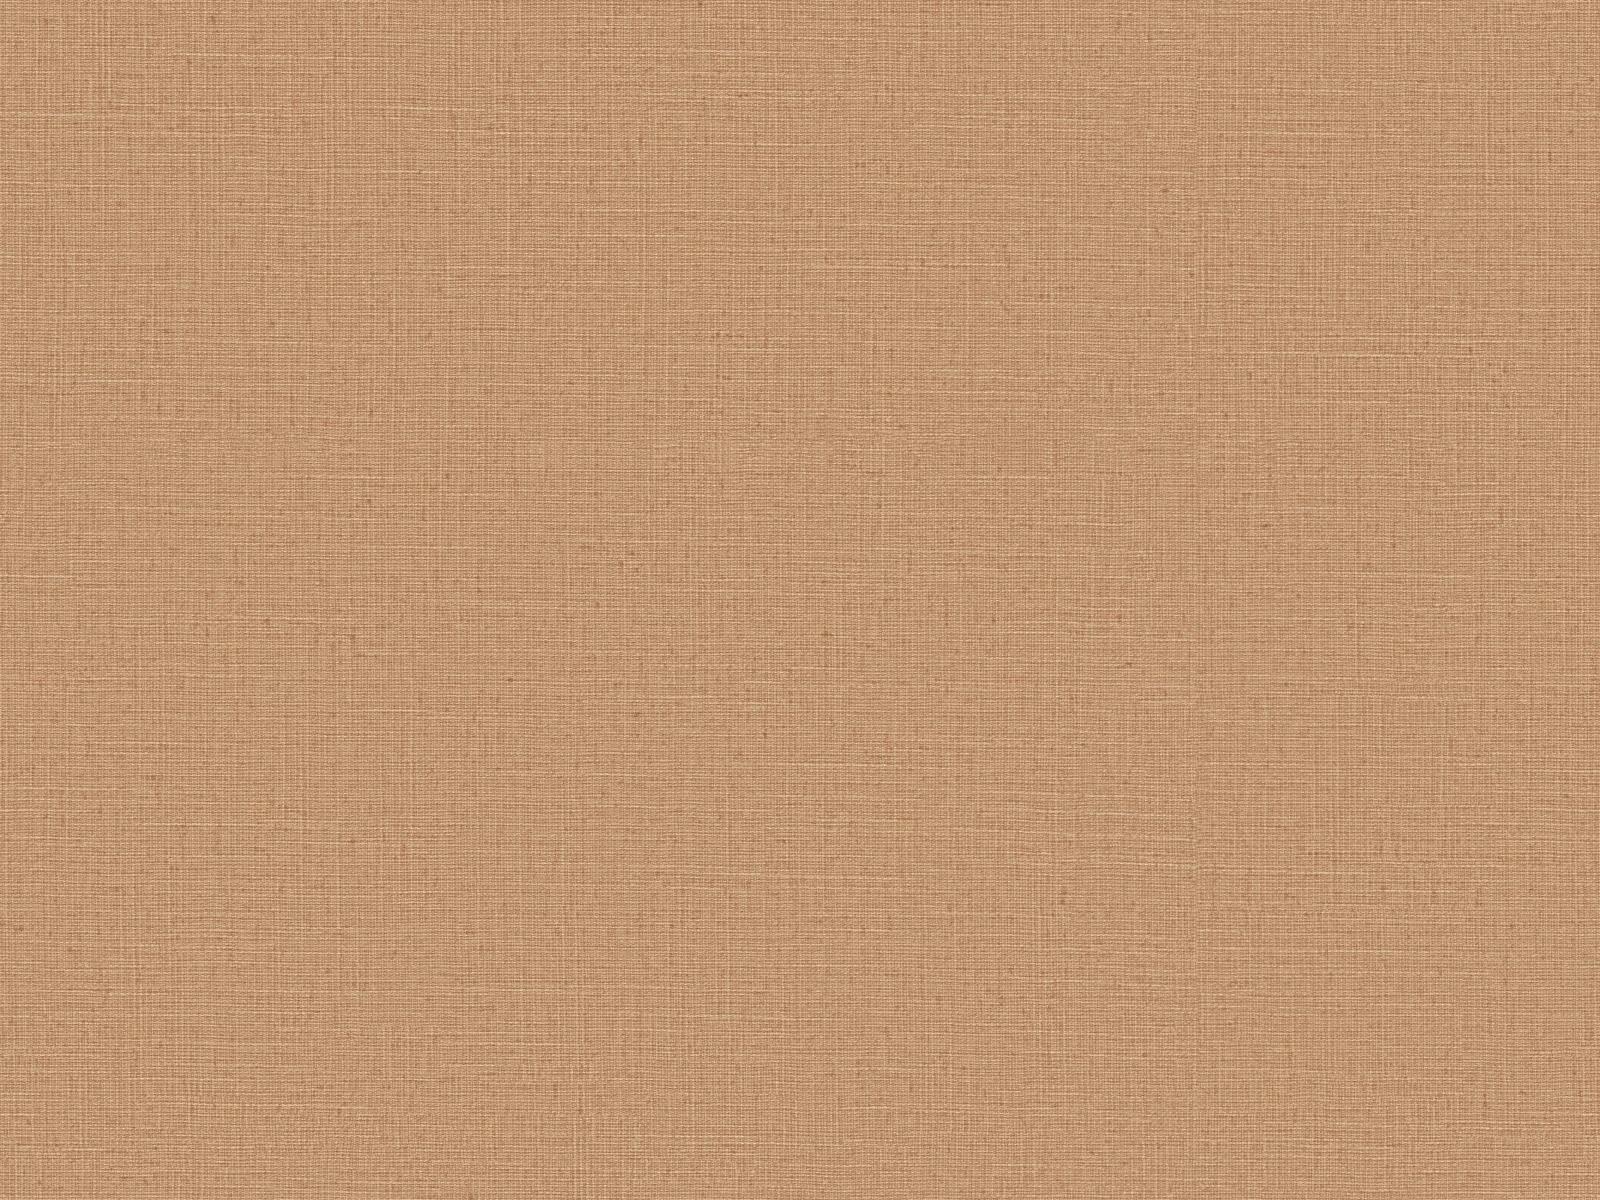 Vliesová tapeta s prirodzenou textilnou štruktúrou v svetlo-hnedá farbe, ER-601640